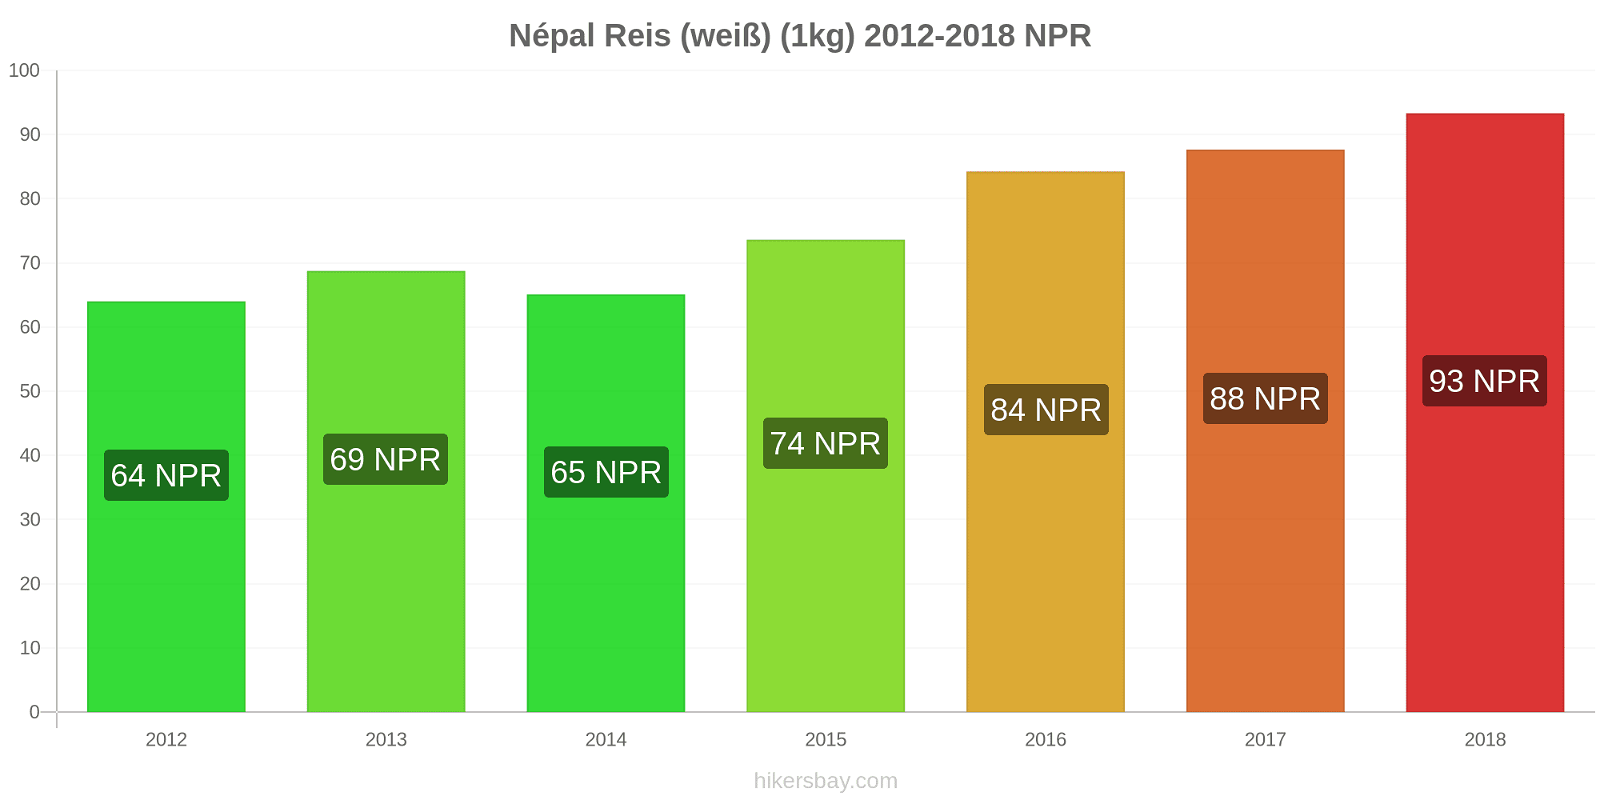 Népal Preisänderungen Kilo weißen Reis hikersbay.com